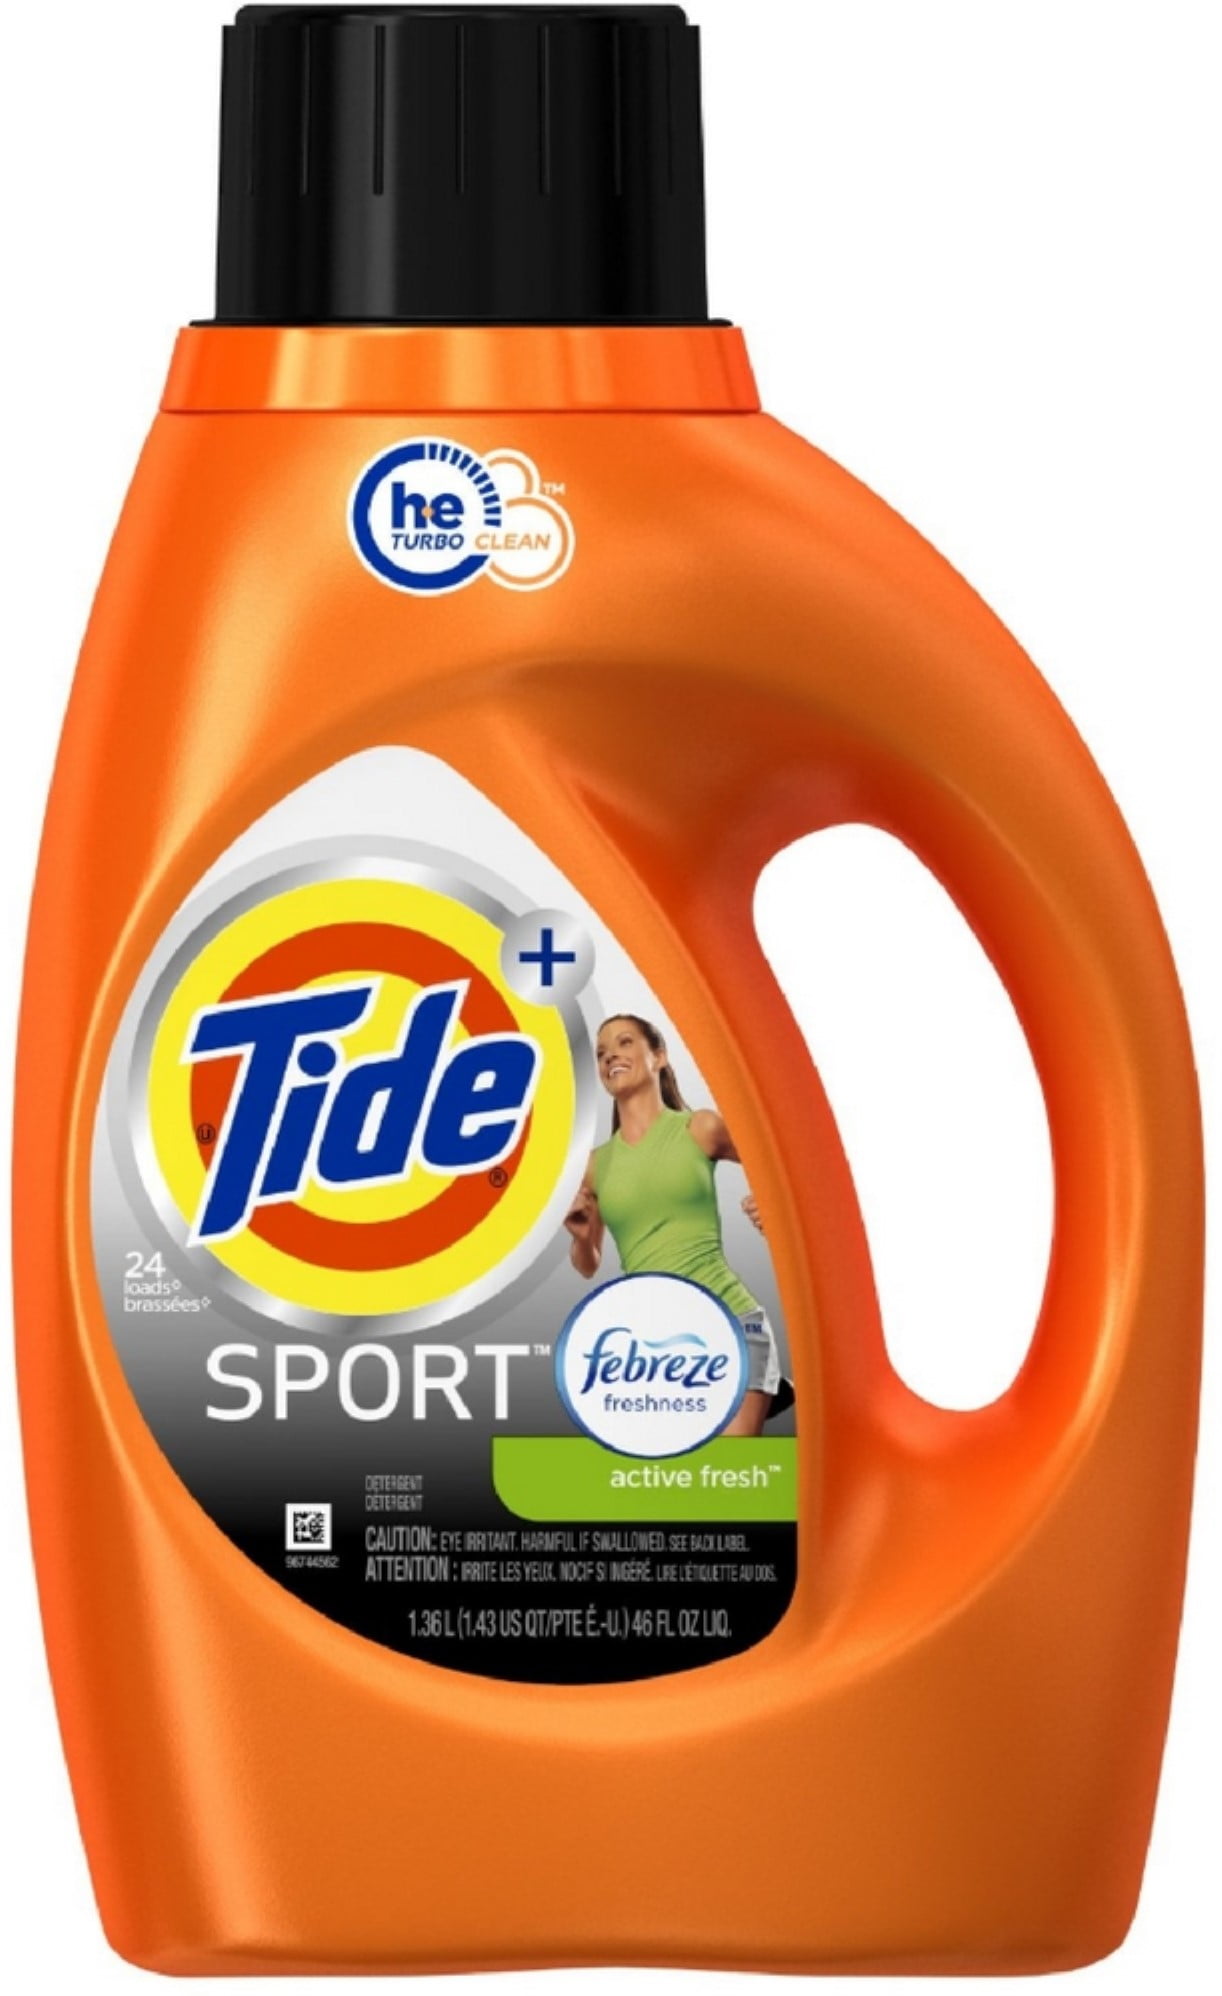 sports detergent